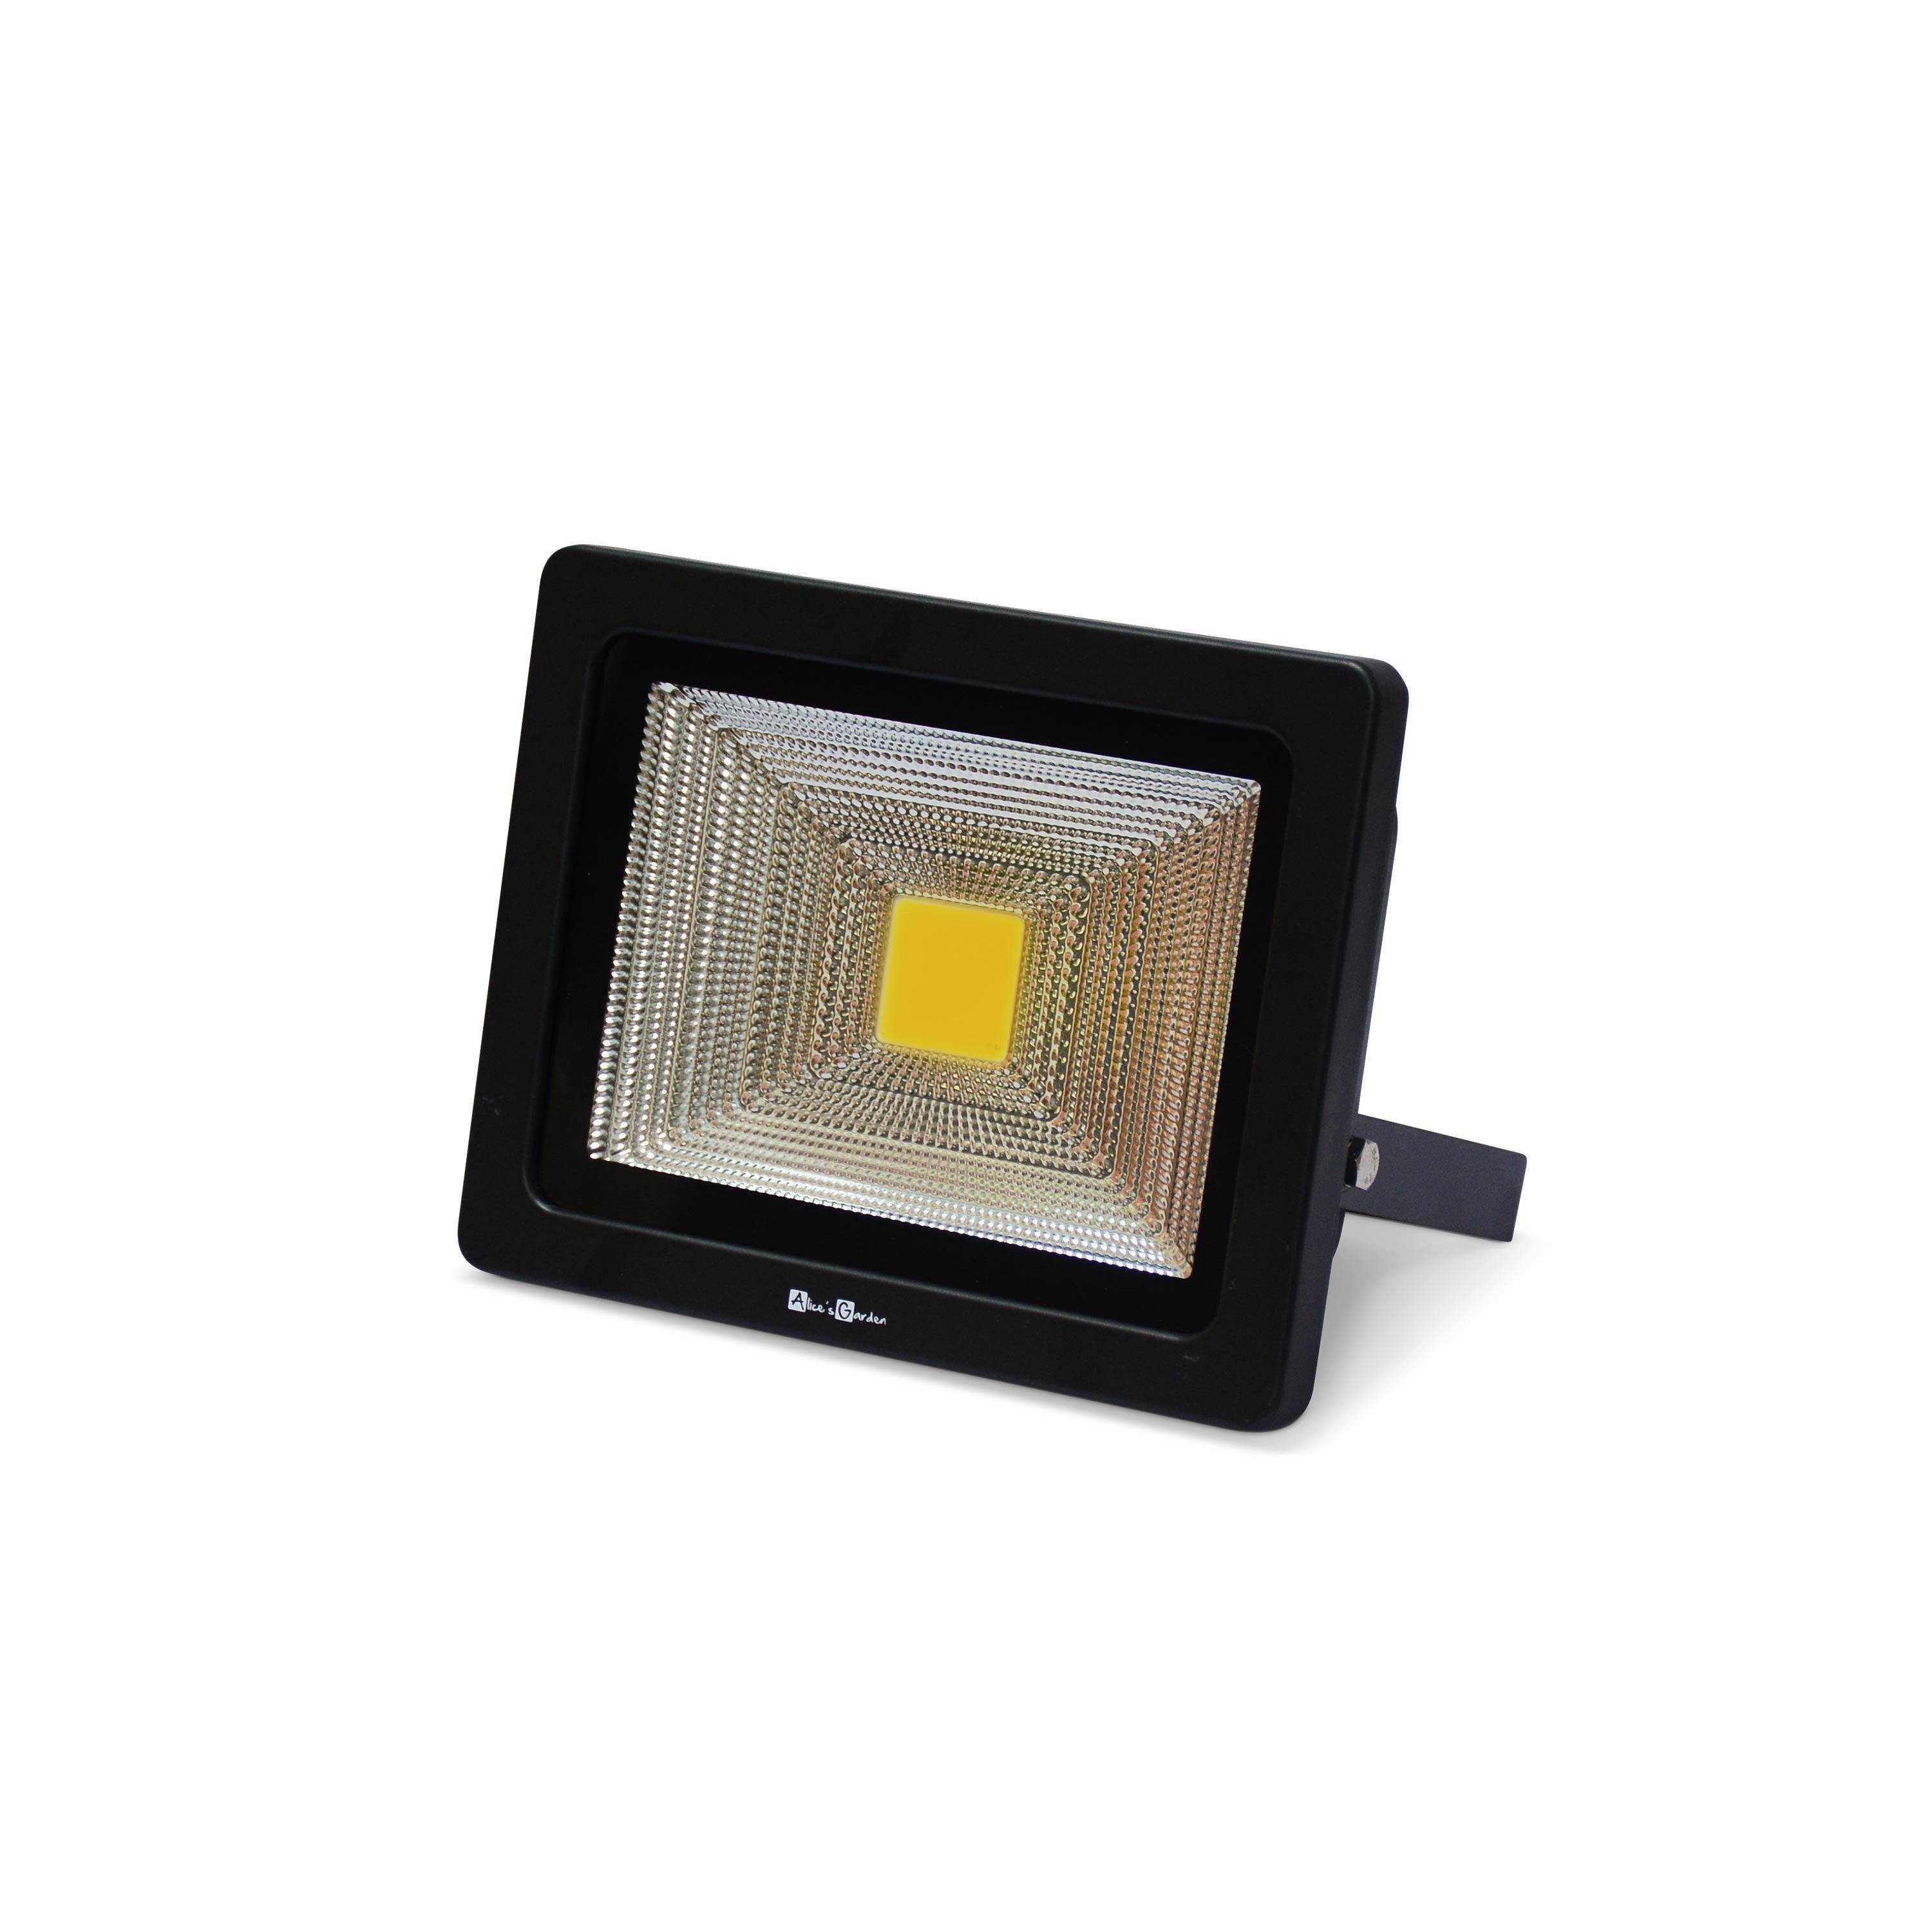 Projecteur solaire LED 20W avec panneau solaire télécommandé blanc chaud, lampe résistante à la pluie et autonome, spot extra puissant 2400 lumens équivalent 150W Photo2